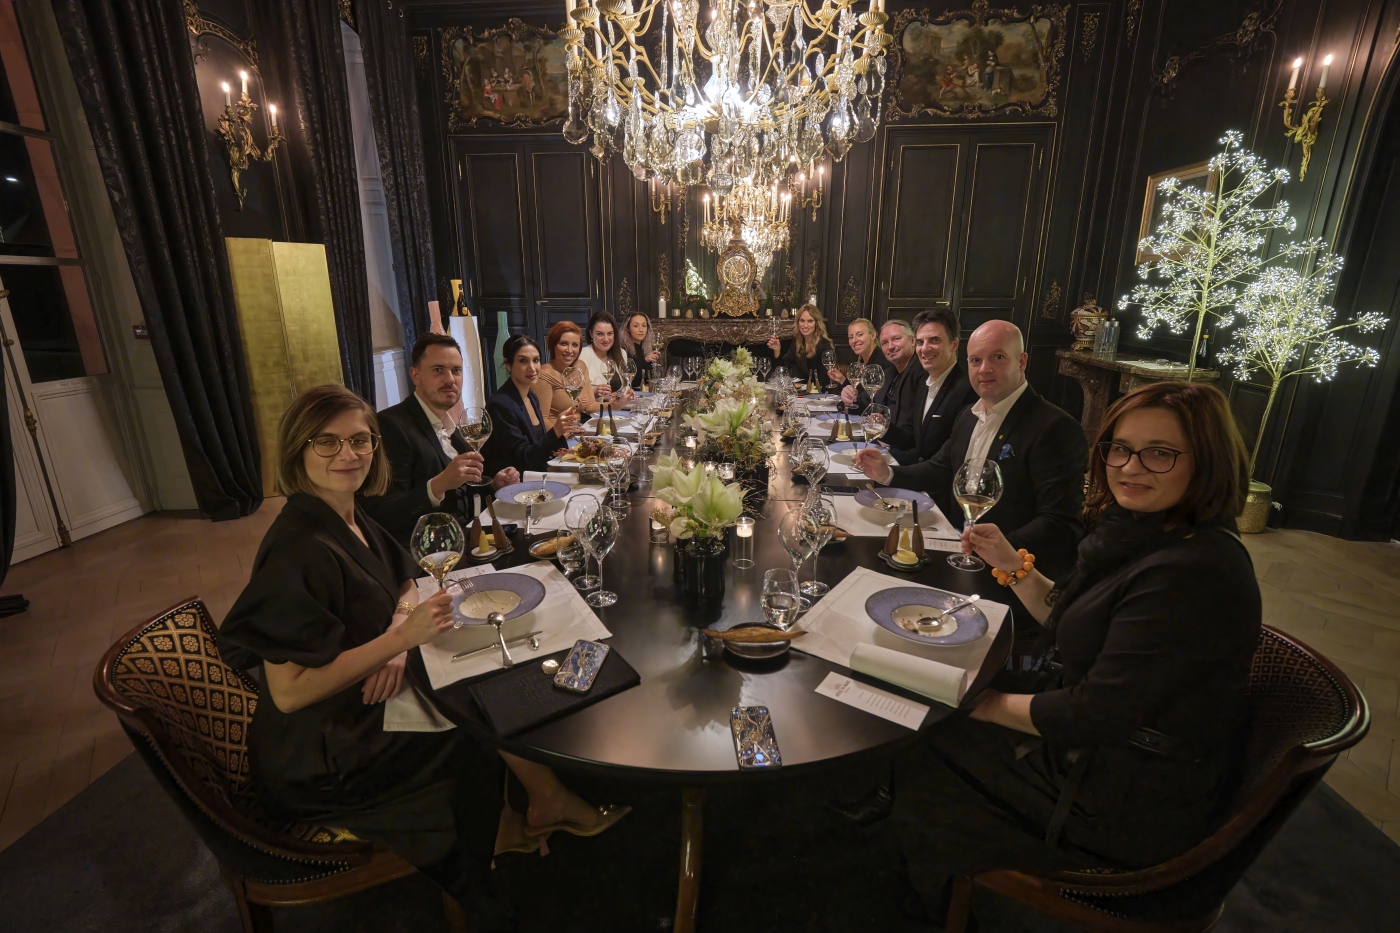 Hrvatske chefice sudjeluju u novom programu poznate šampanjske kuće Veuve Clicquot